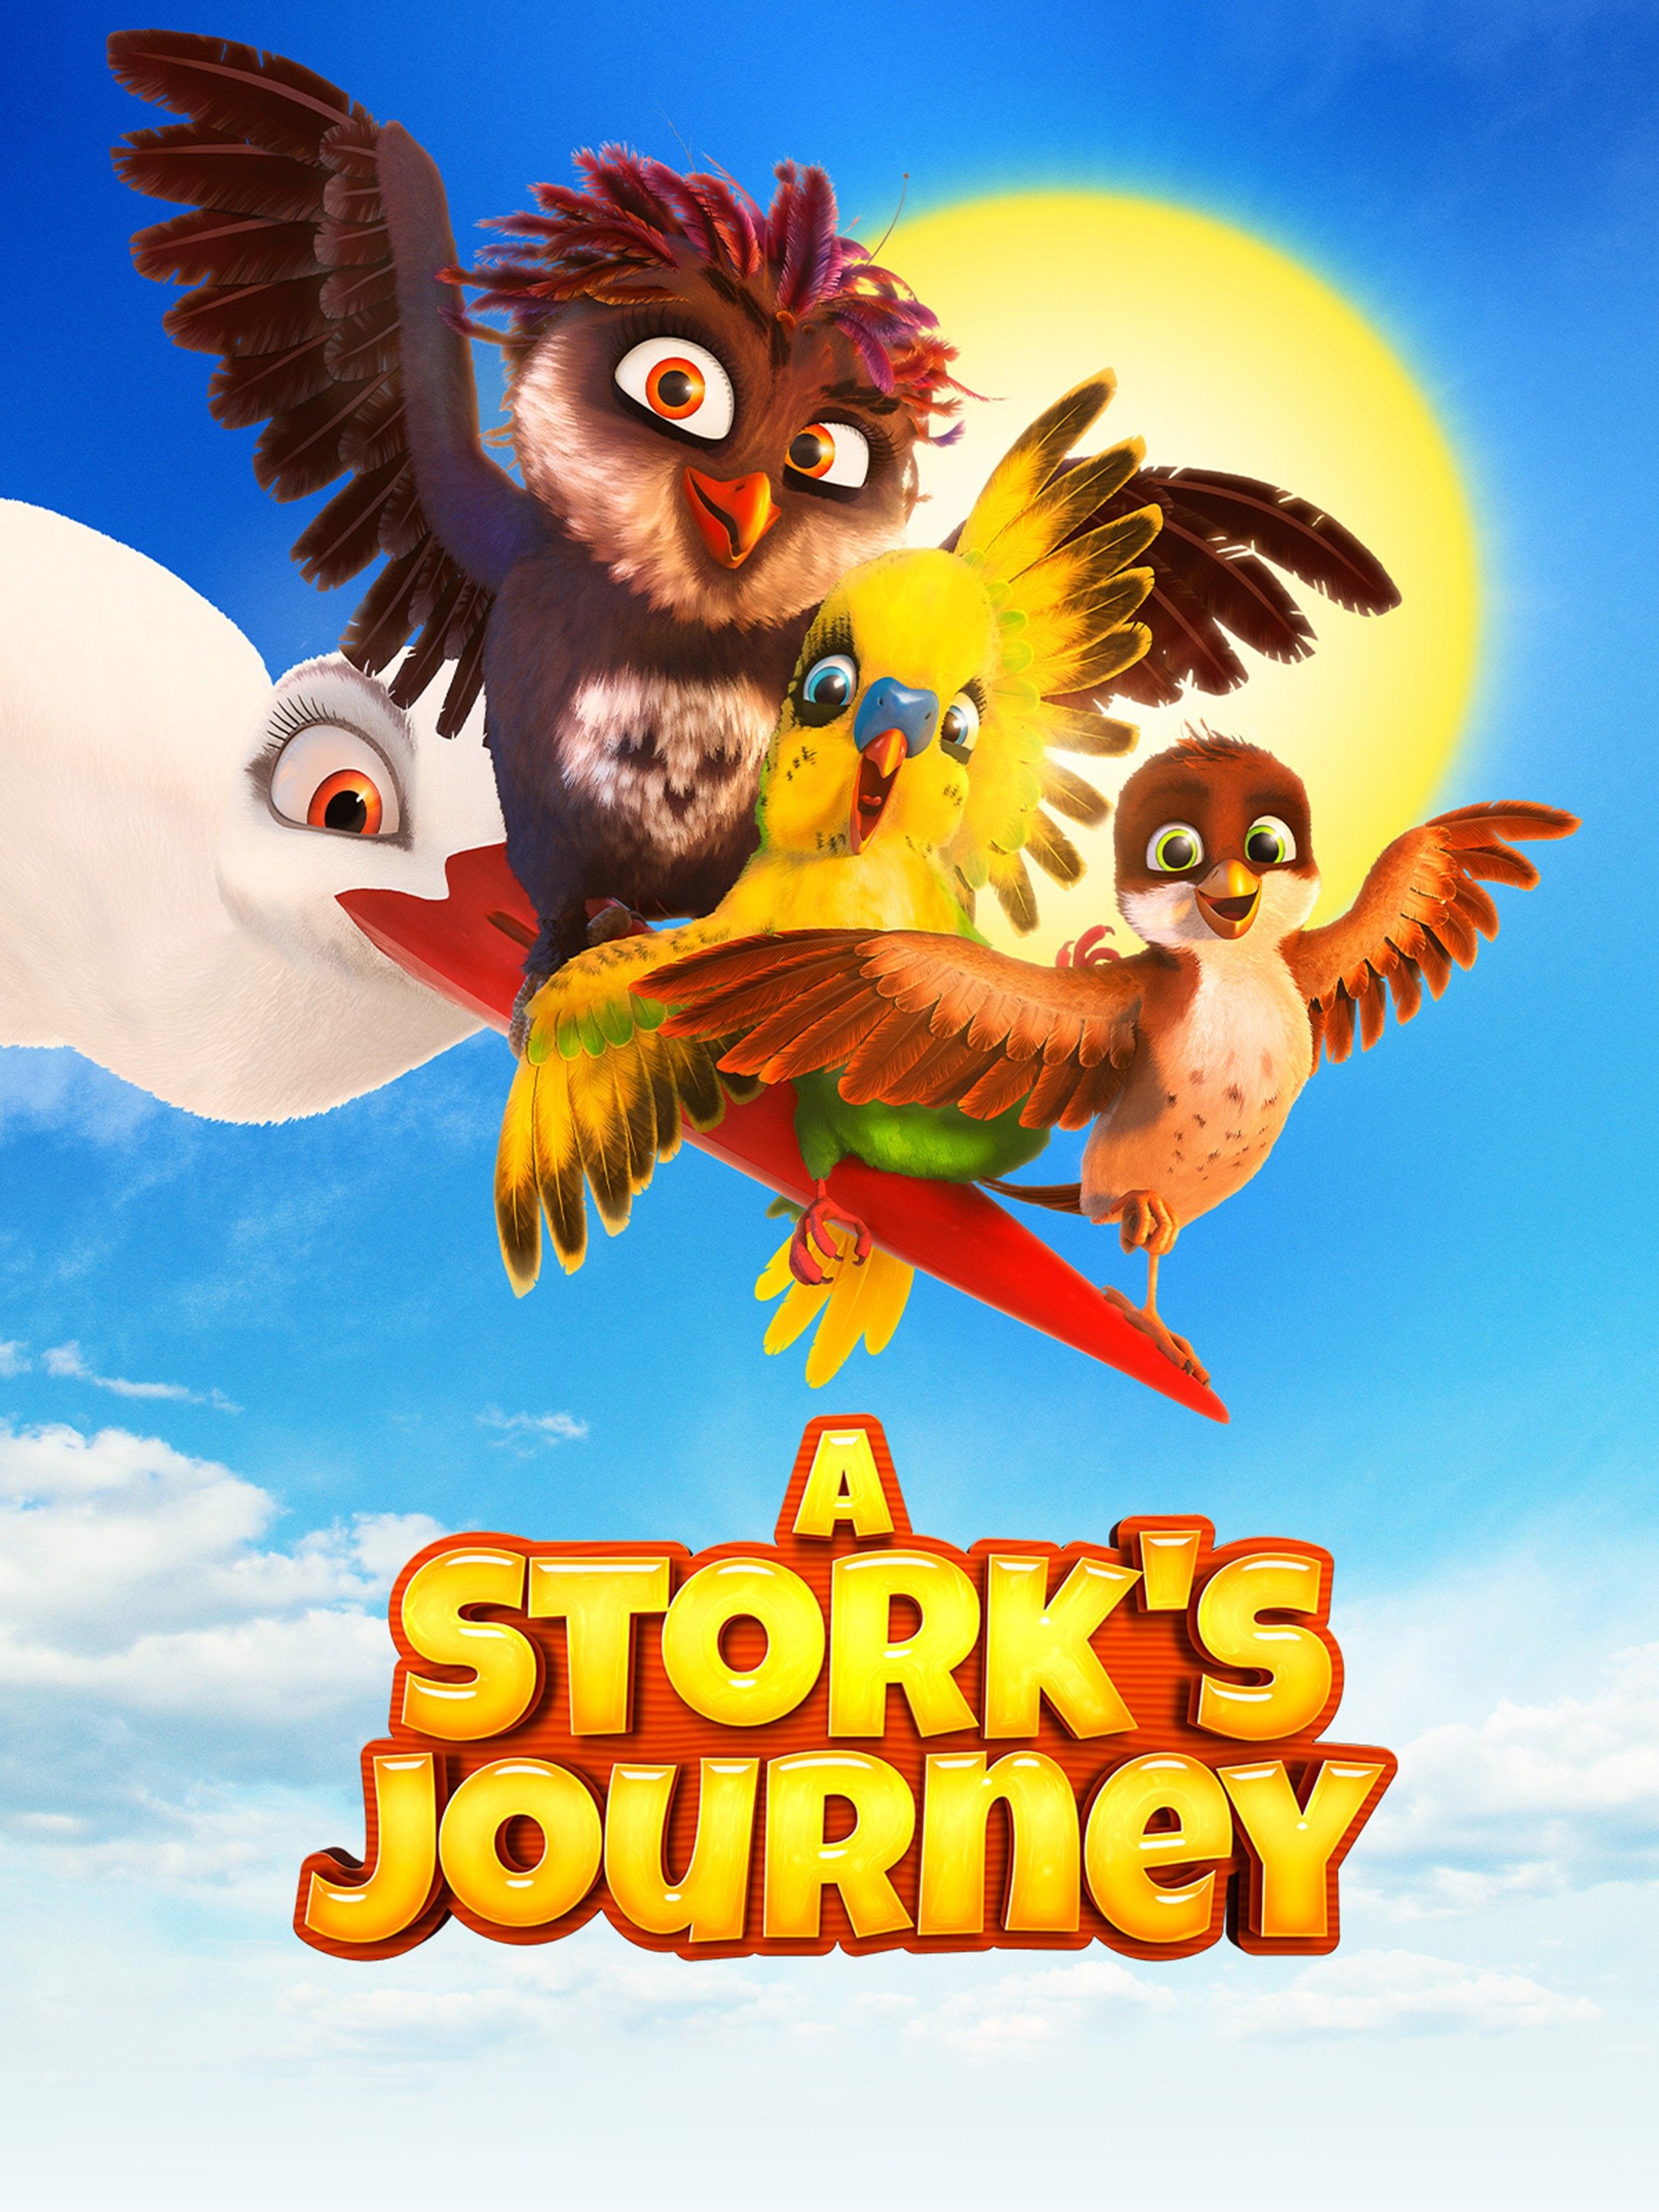 stork's journey full movie download